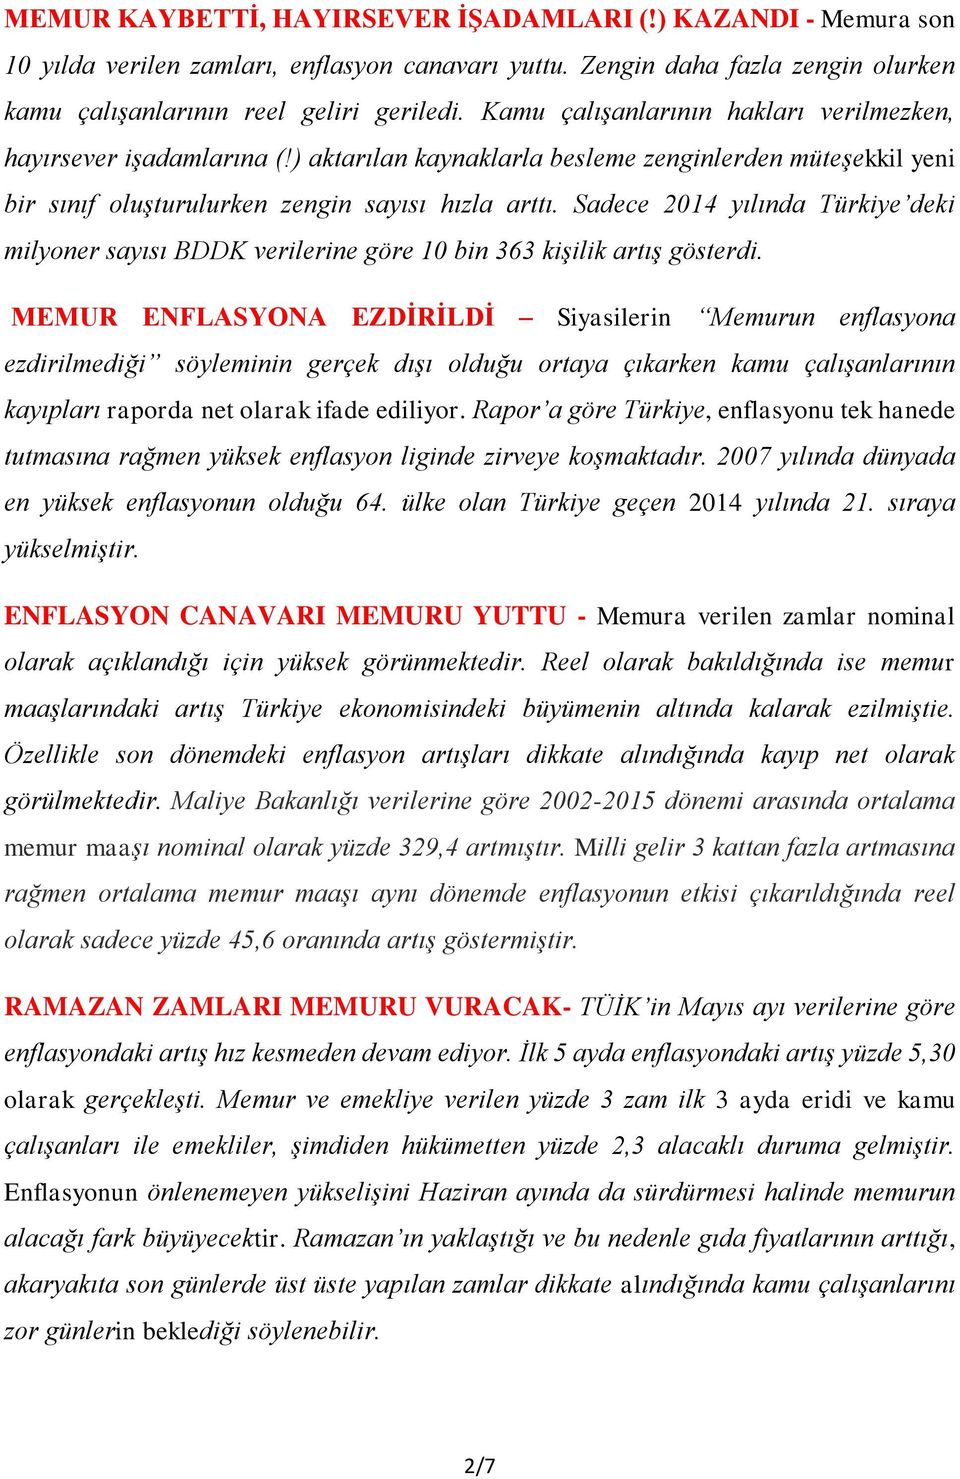 Sadece 2014 yılında Türkiye deki milyoner sayısı BDDK verilerine göre 10 bin 363 kişilik artış gösterdi.